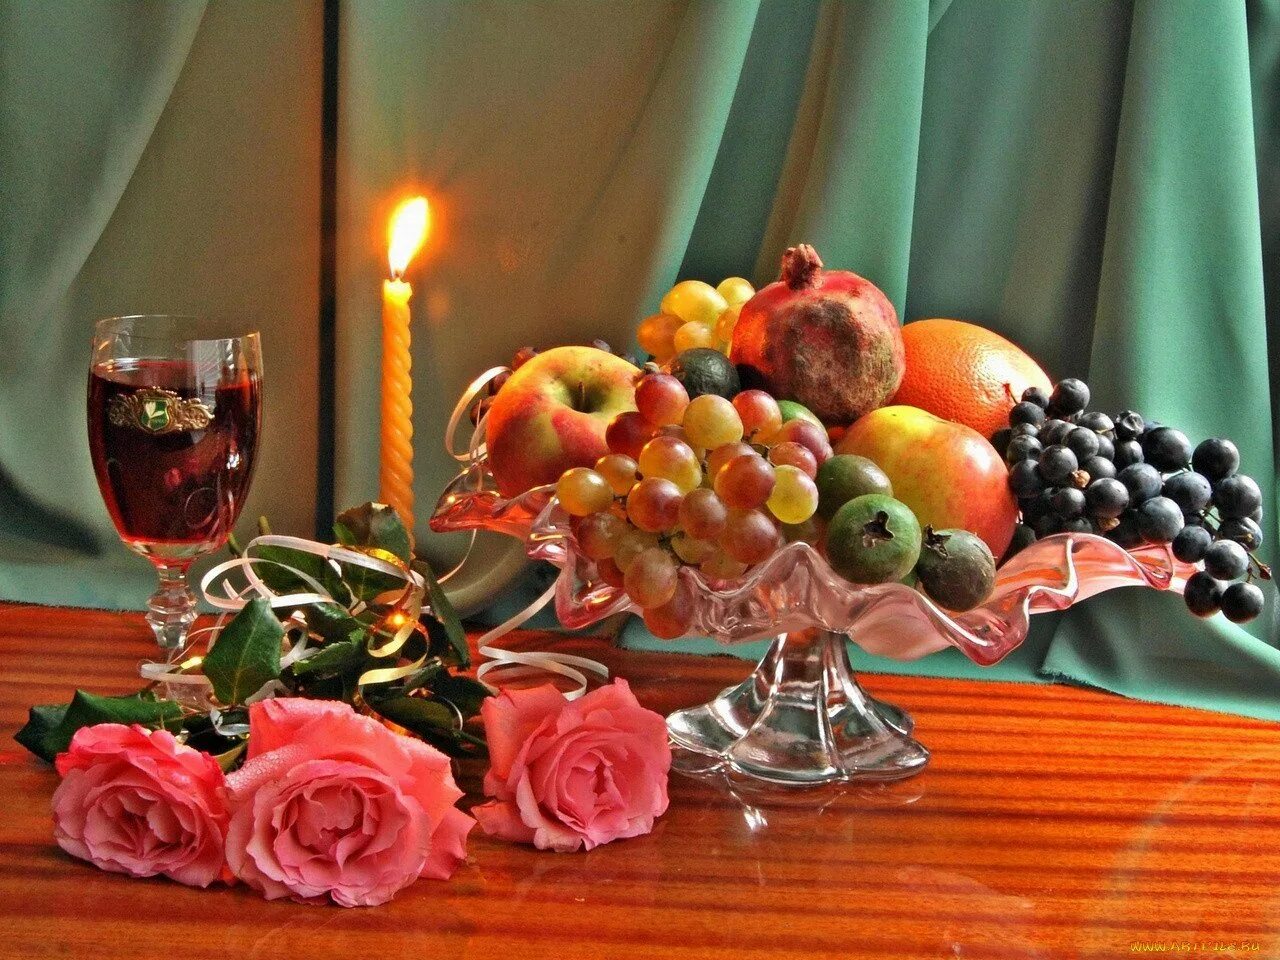 Натюрморт добрый вечер. Натюрморт с вином и фруктами. Фрукты в вазе на столе. Натюрморт с фруктами вином и свечами. Светлый вечер добрый вечер